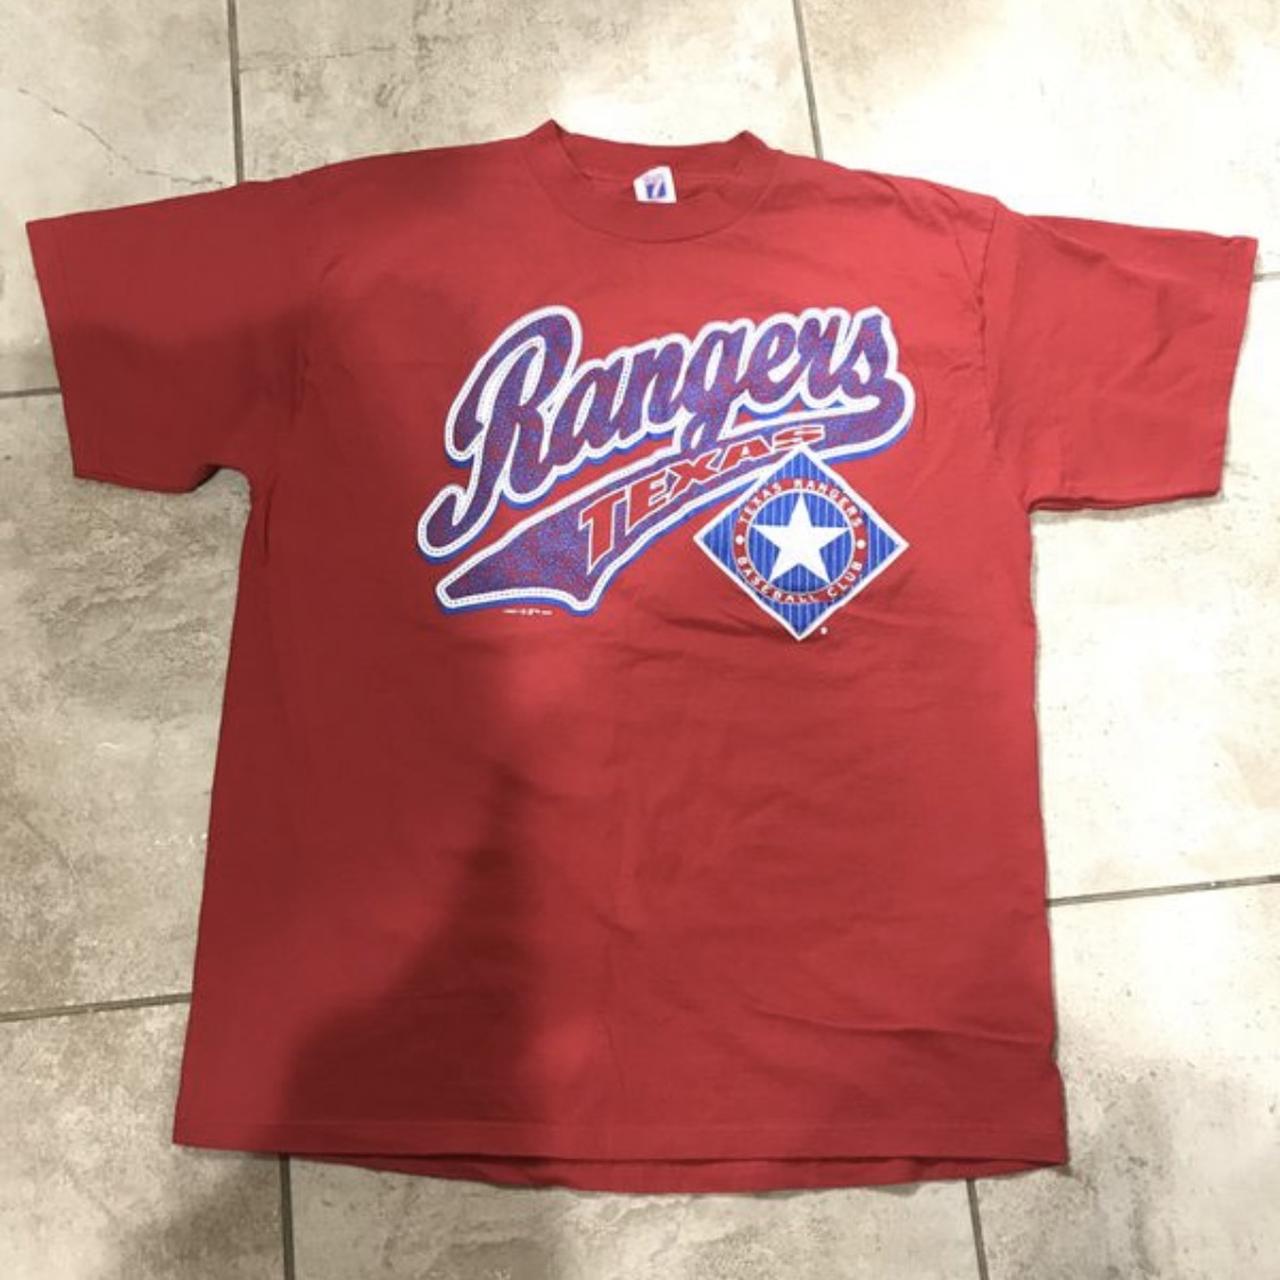 Vintage 1998 Texas Rangers Shirt Lee tag - Size XL - Depop